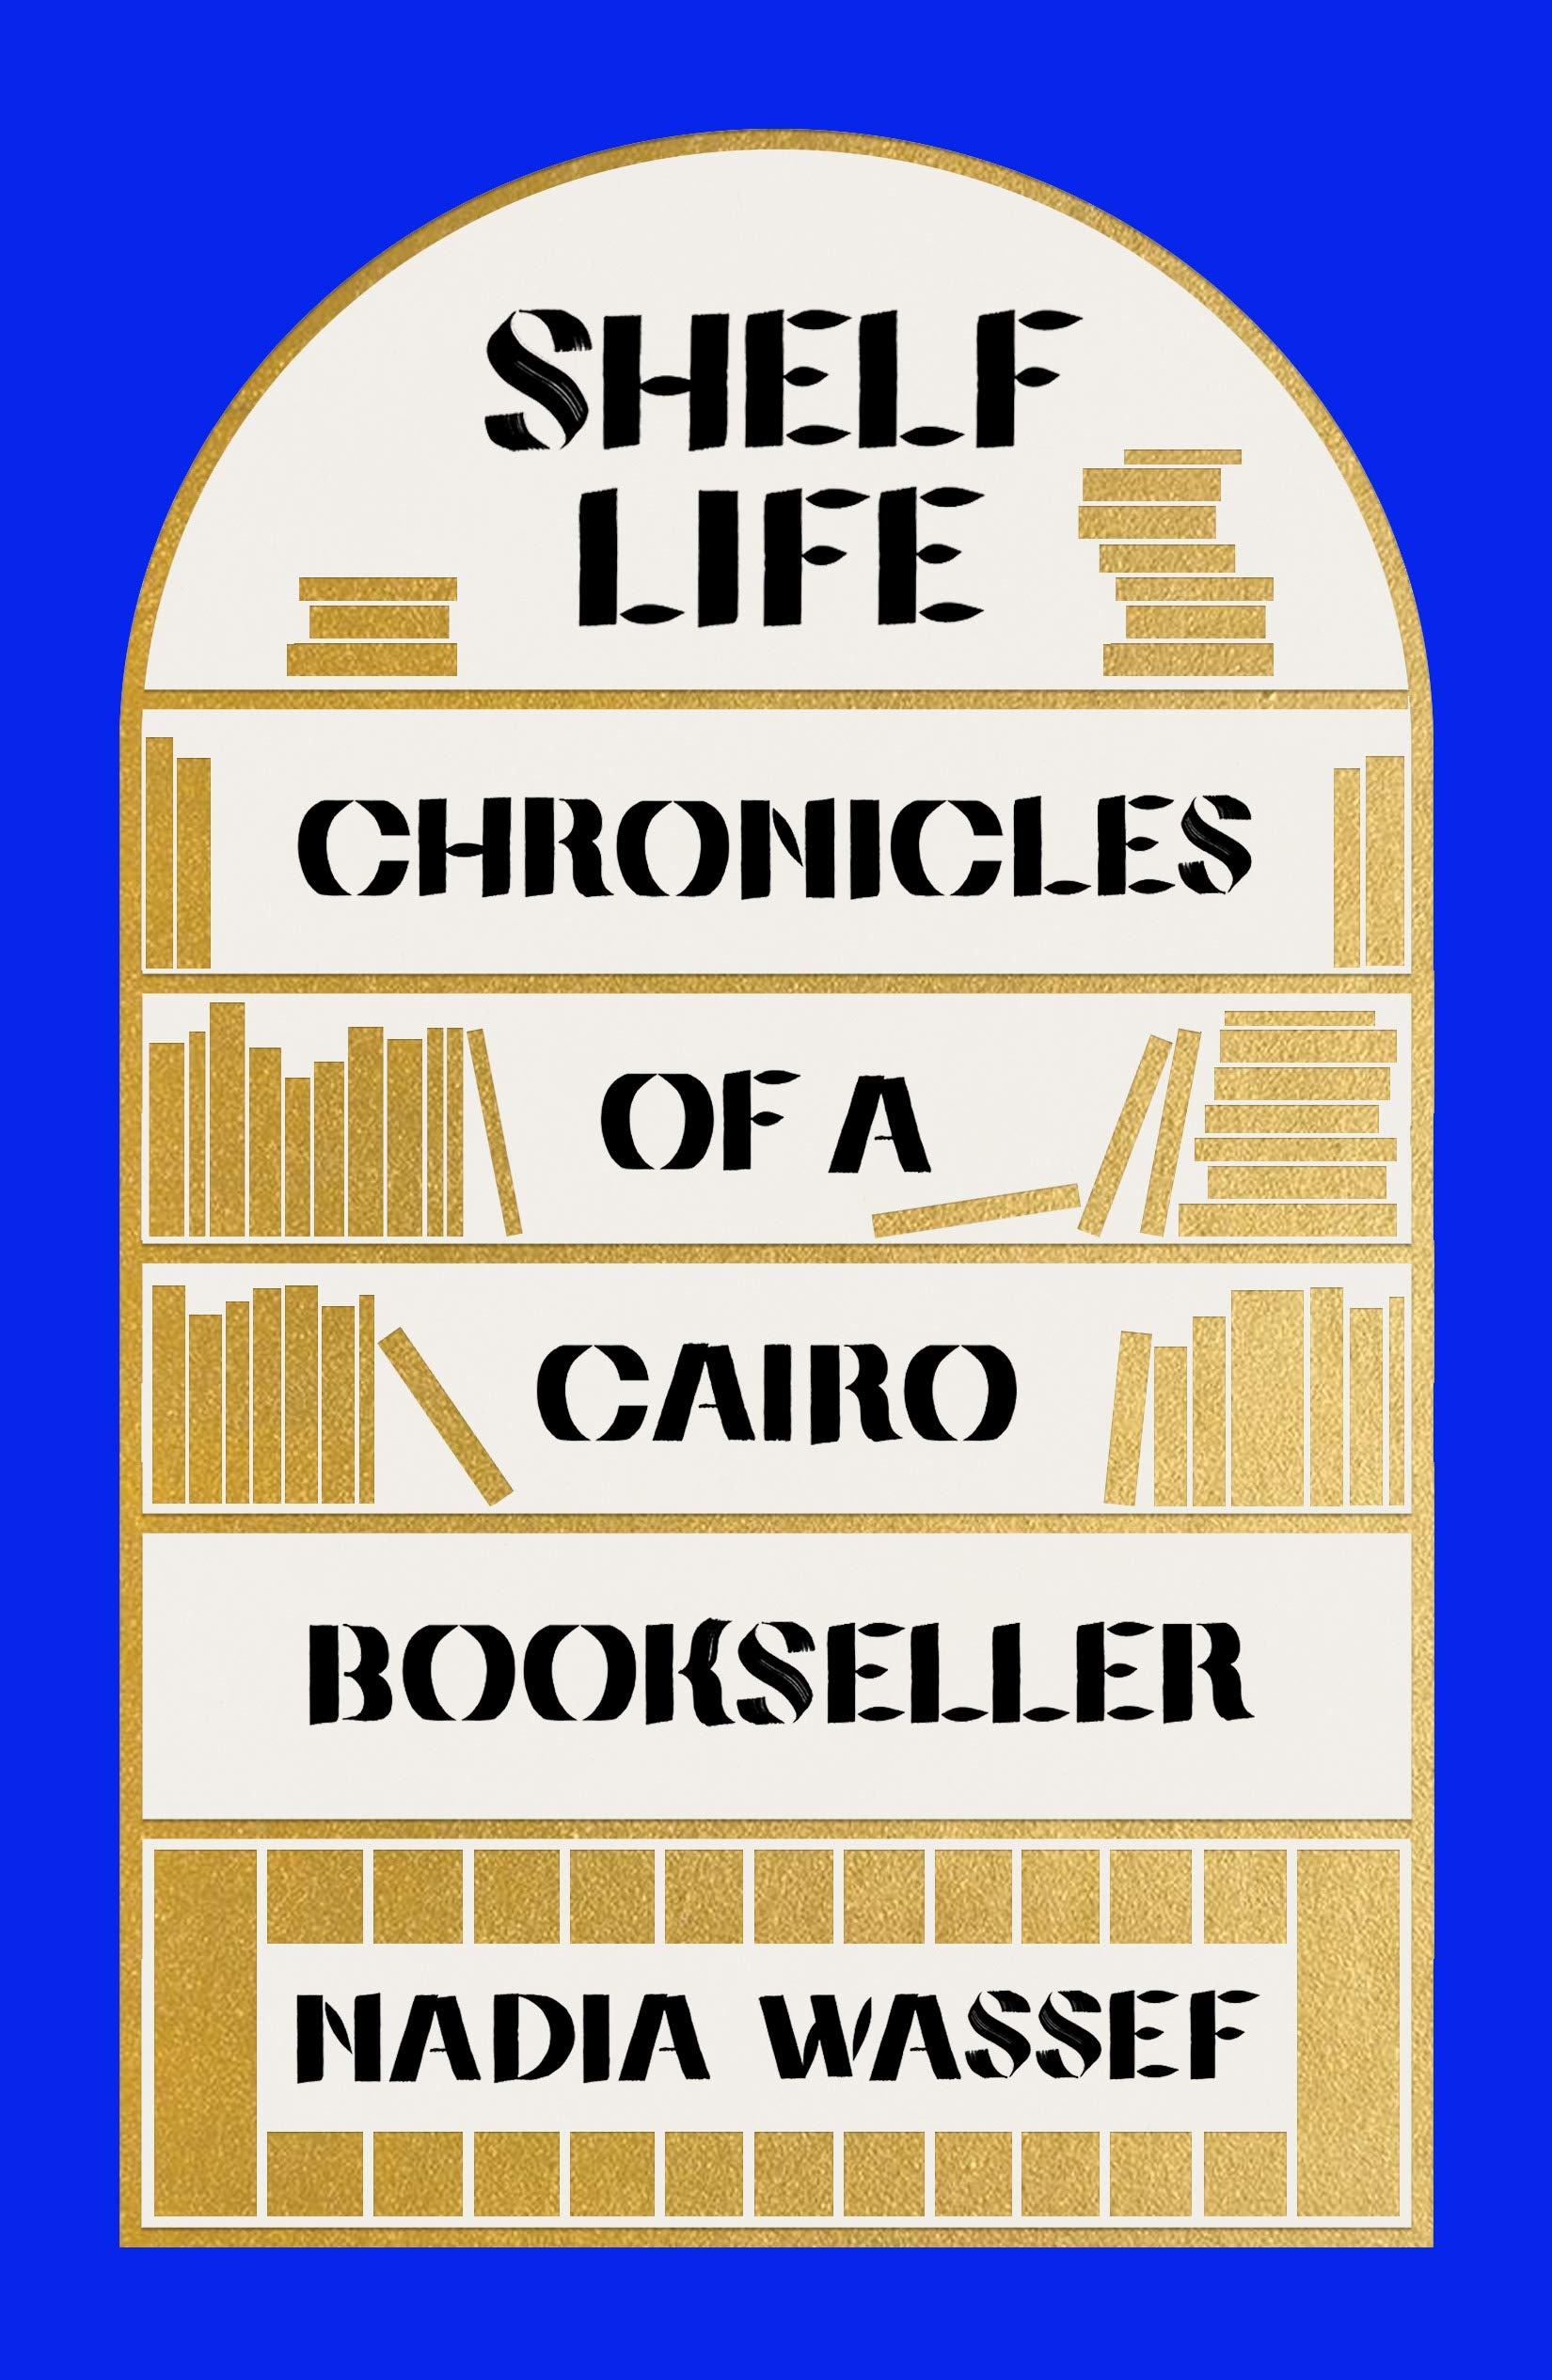 كتاب عن مذكرات بائع كتب في القاهرة - للكاتبة المصرية نادية واصف. Cover of Nadia Wassef's "Shelf Life: Chronicles of a Cairo Bookseller" (due for release in English on 5 October 2021; published by Farrar, Straus and Giroux)